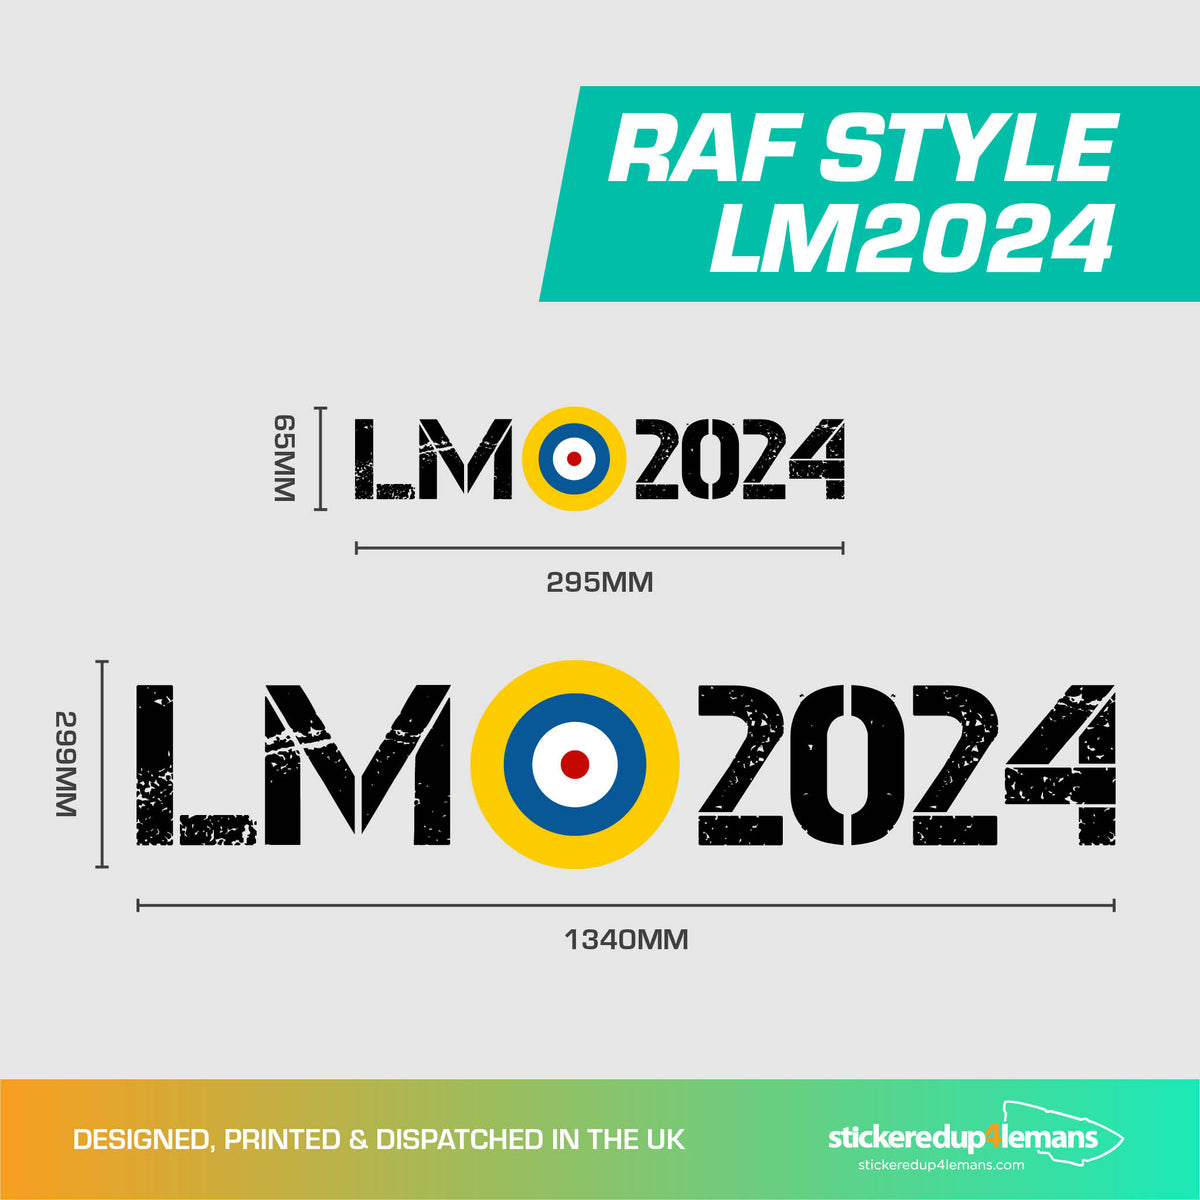 RAF LM 2024